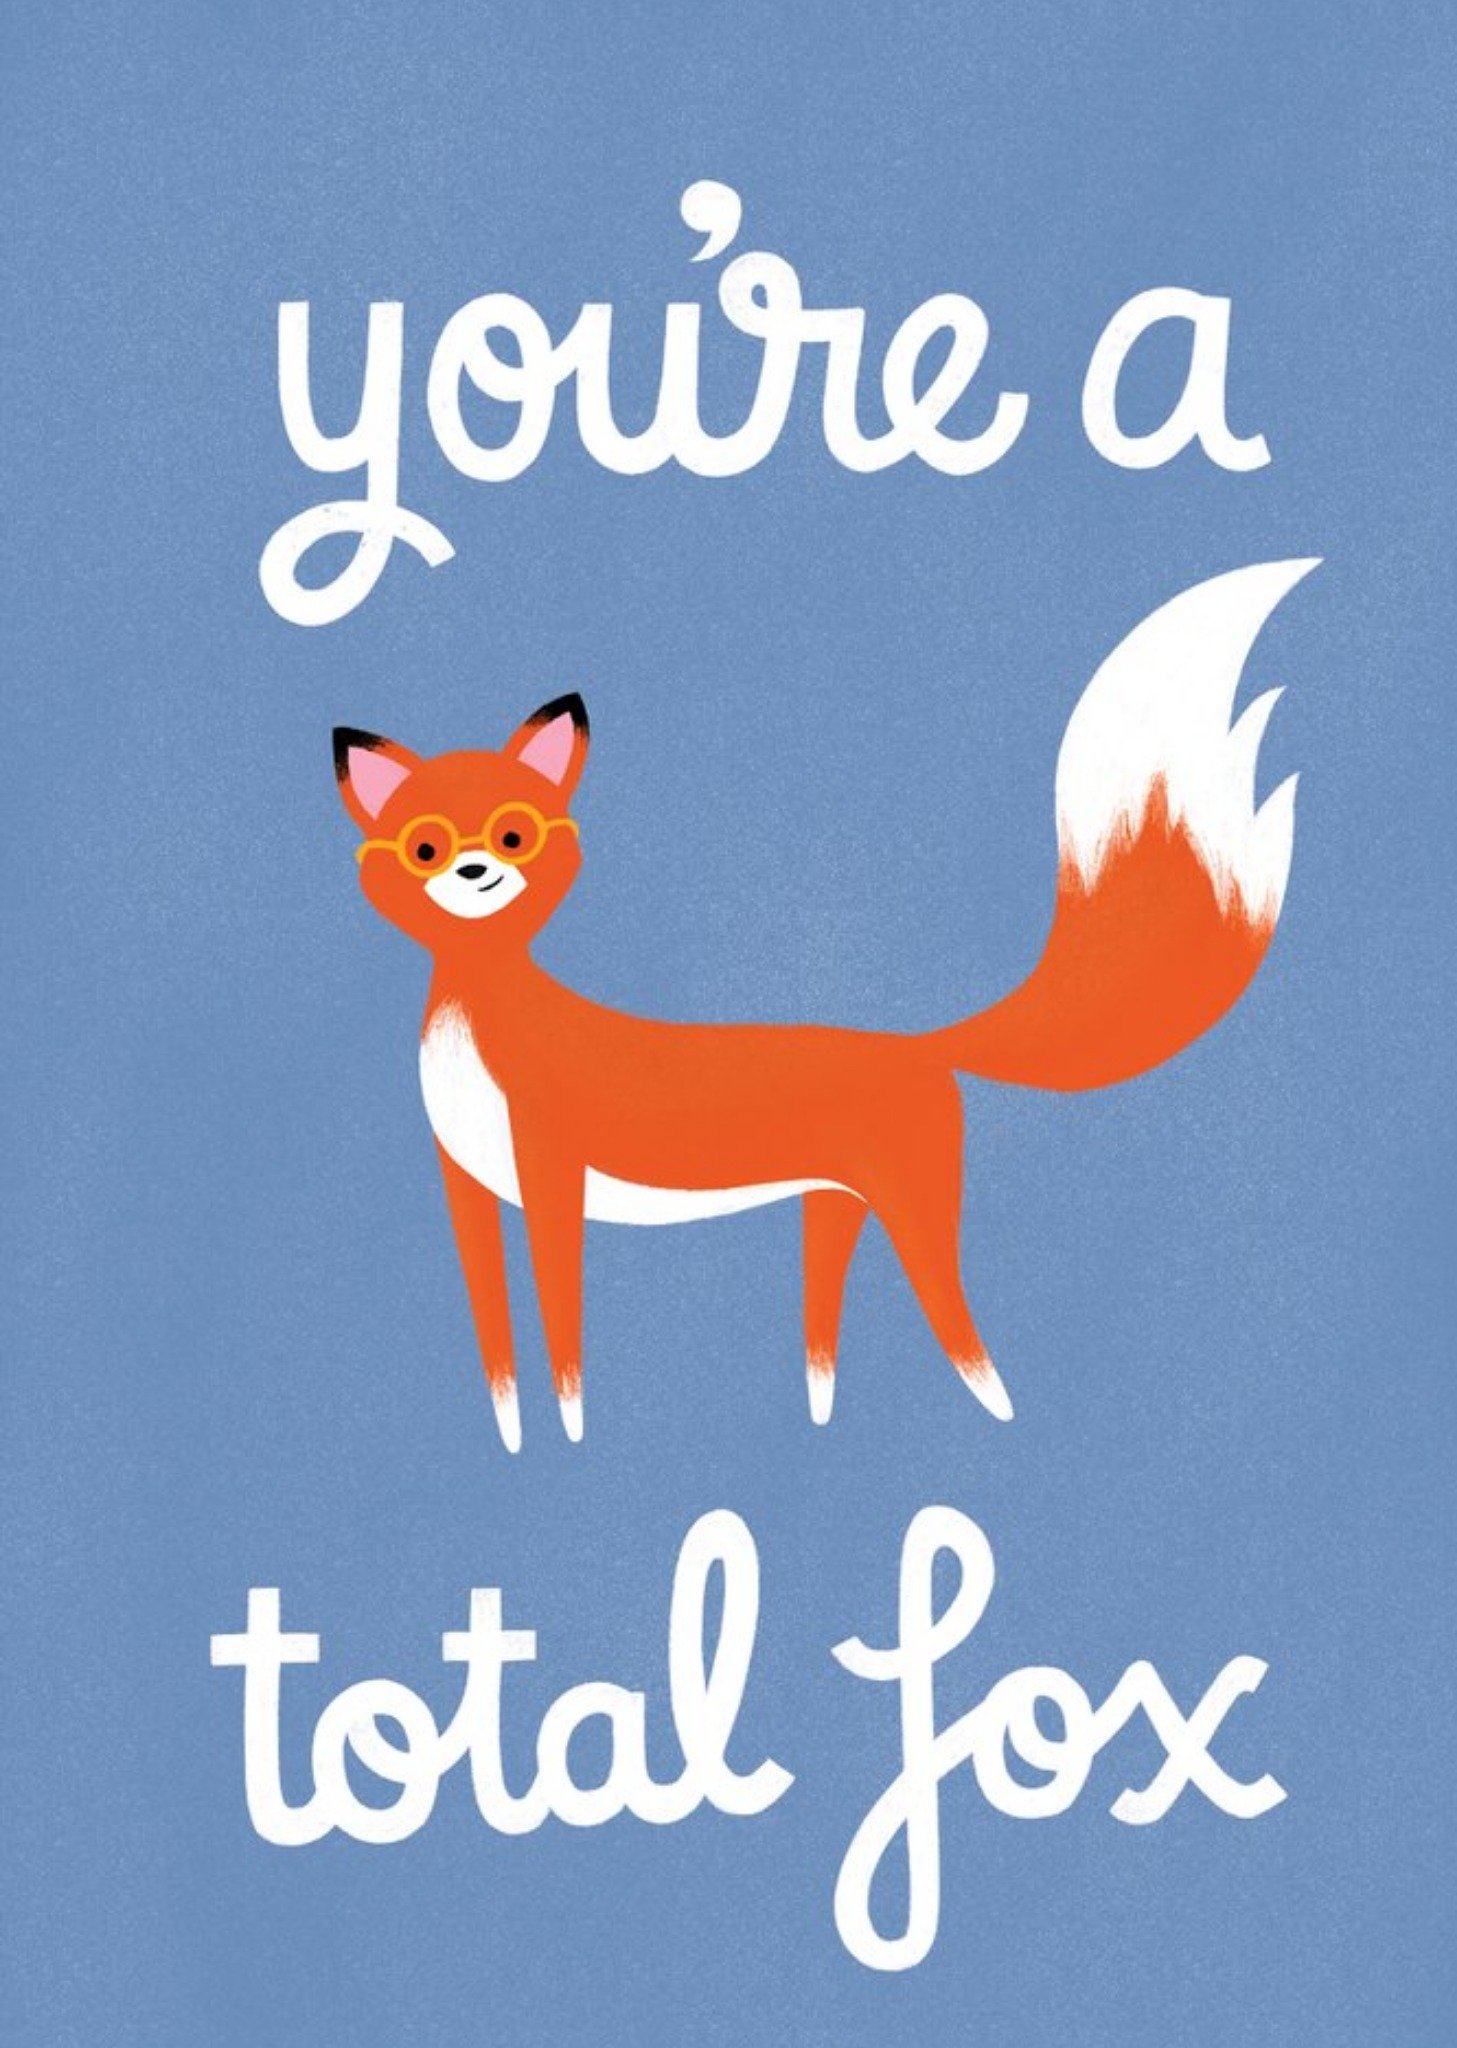 Cardy Club Fox Funny Cool Cute Card, Large